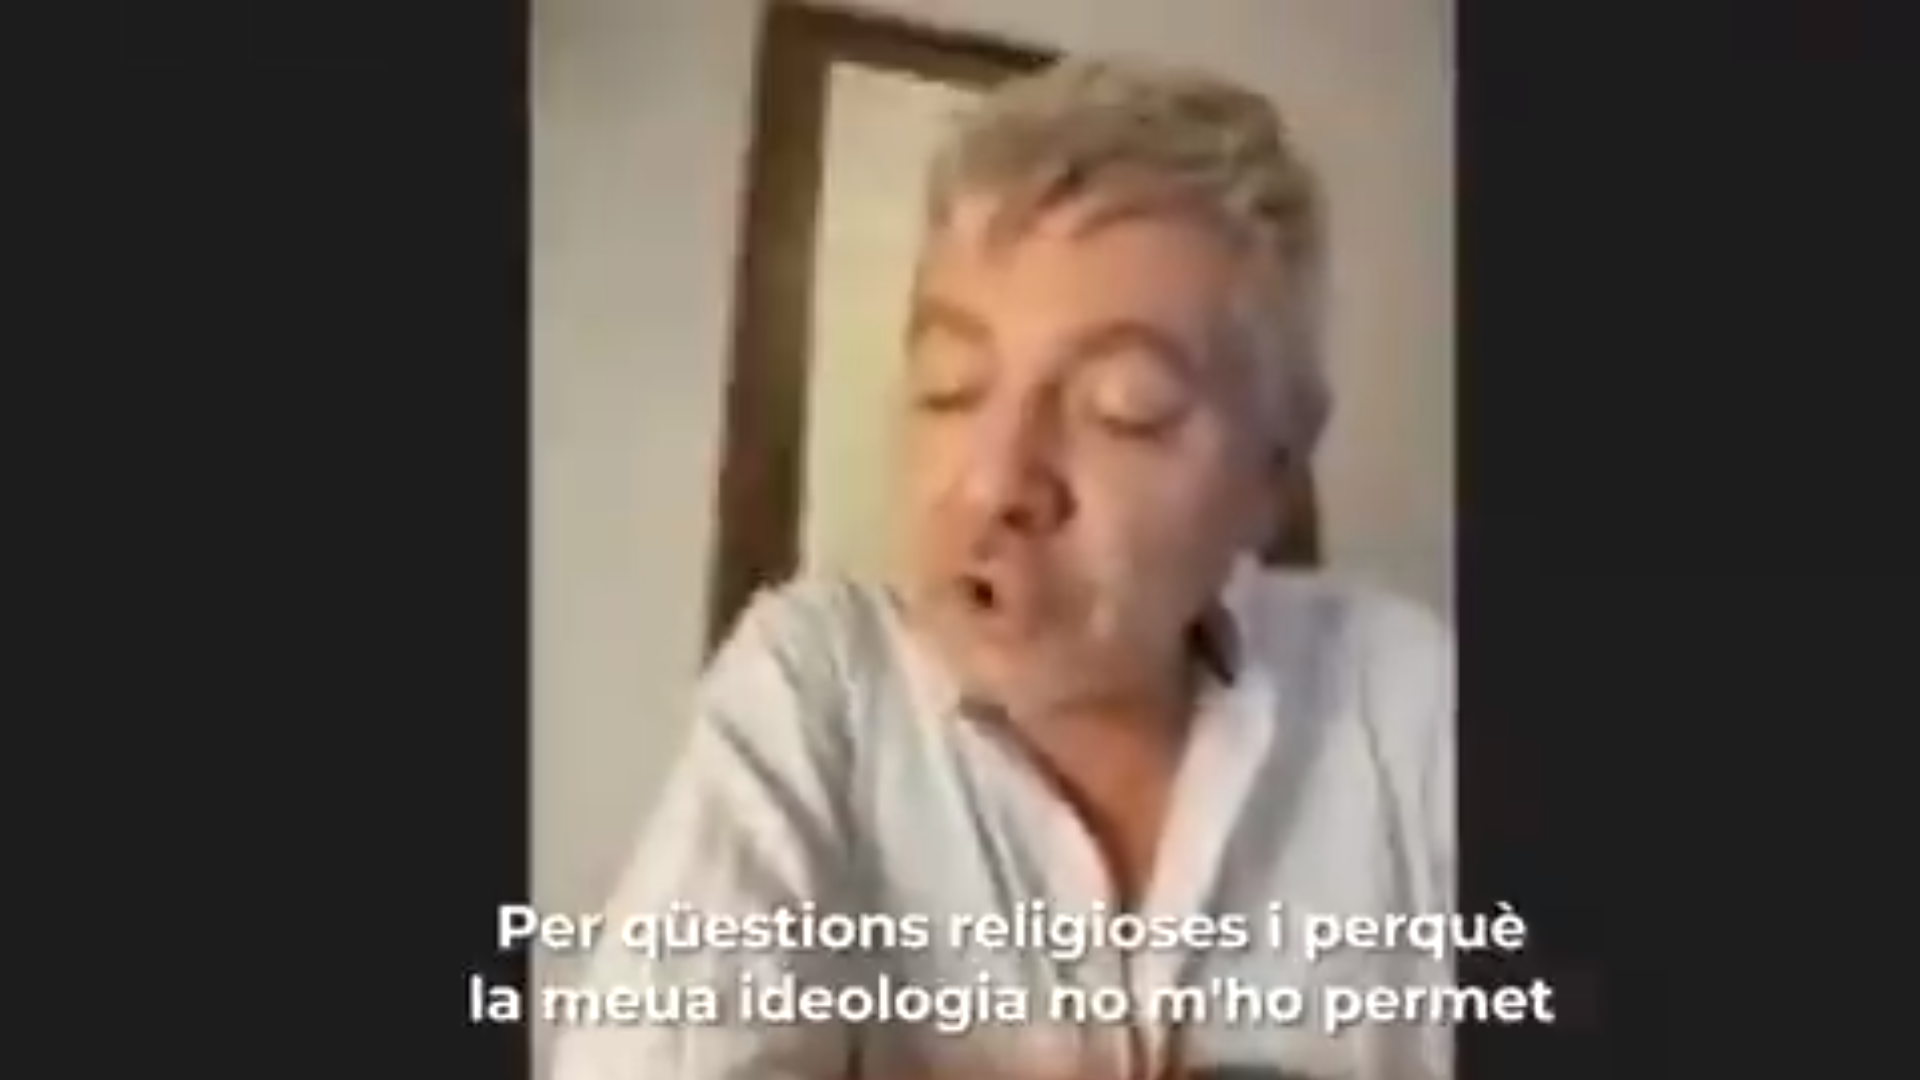 Un concejal de Ciudadanos no lee en valenciano "por cuestiones religiosas"